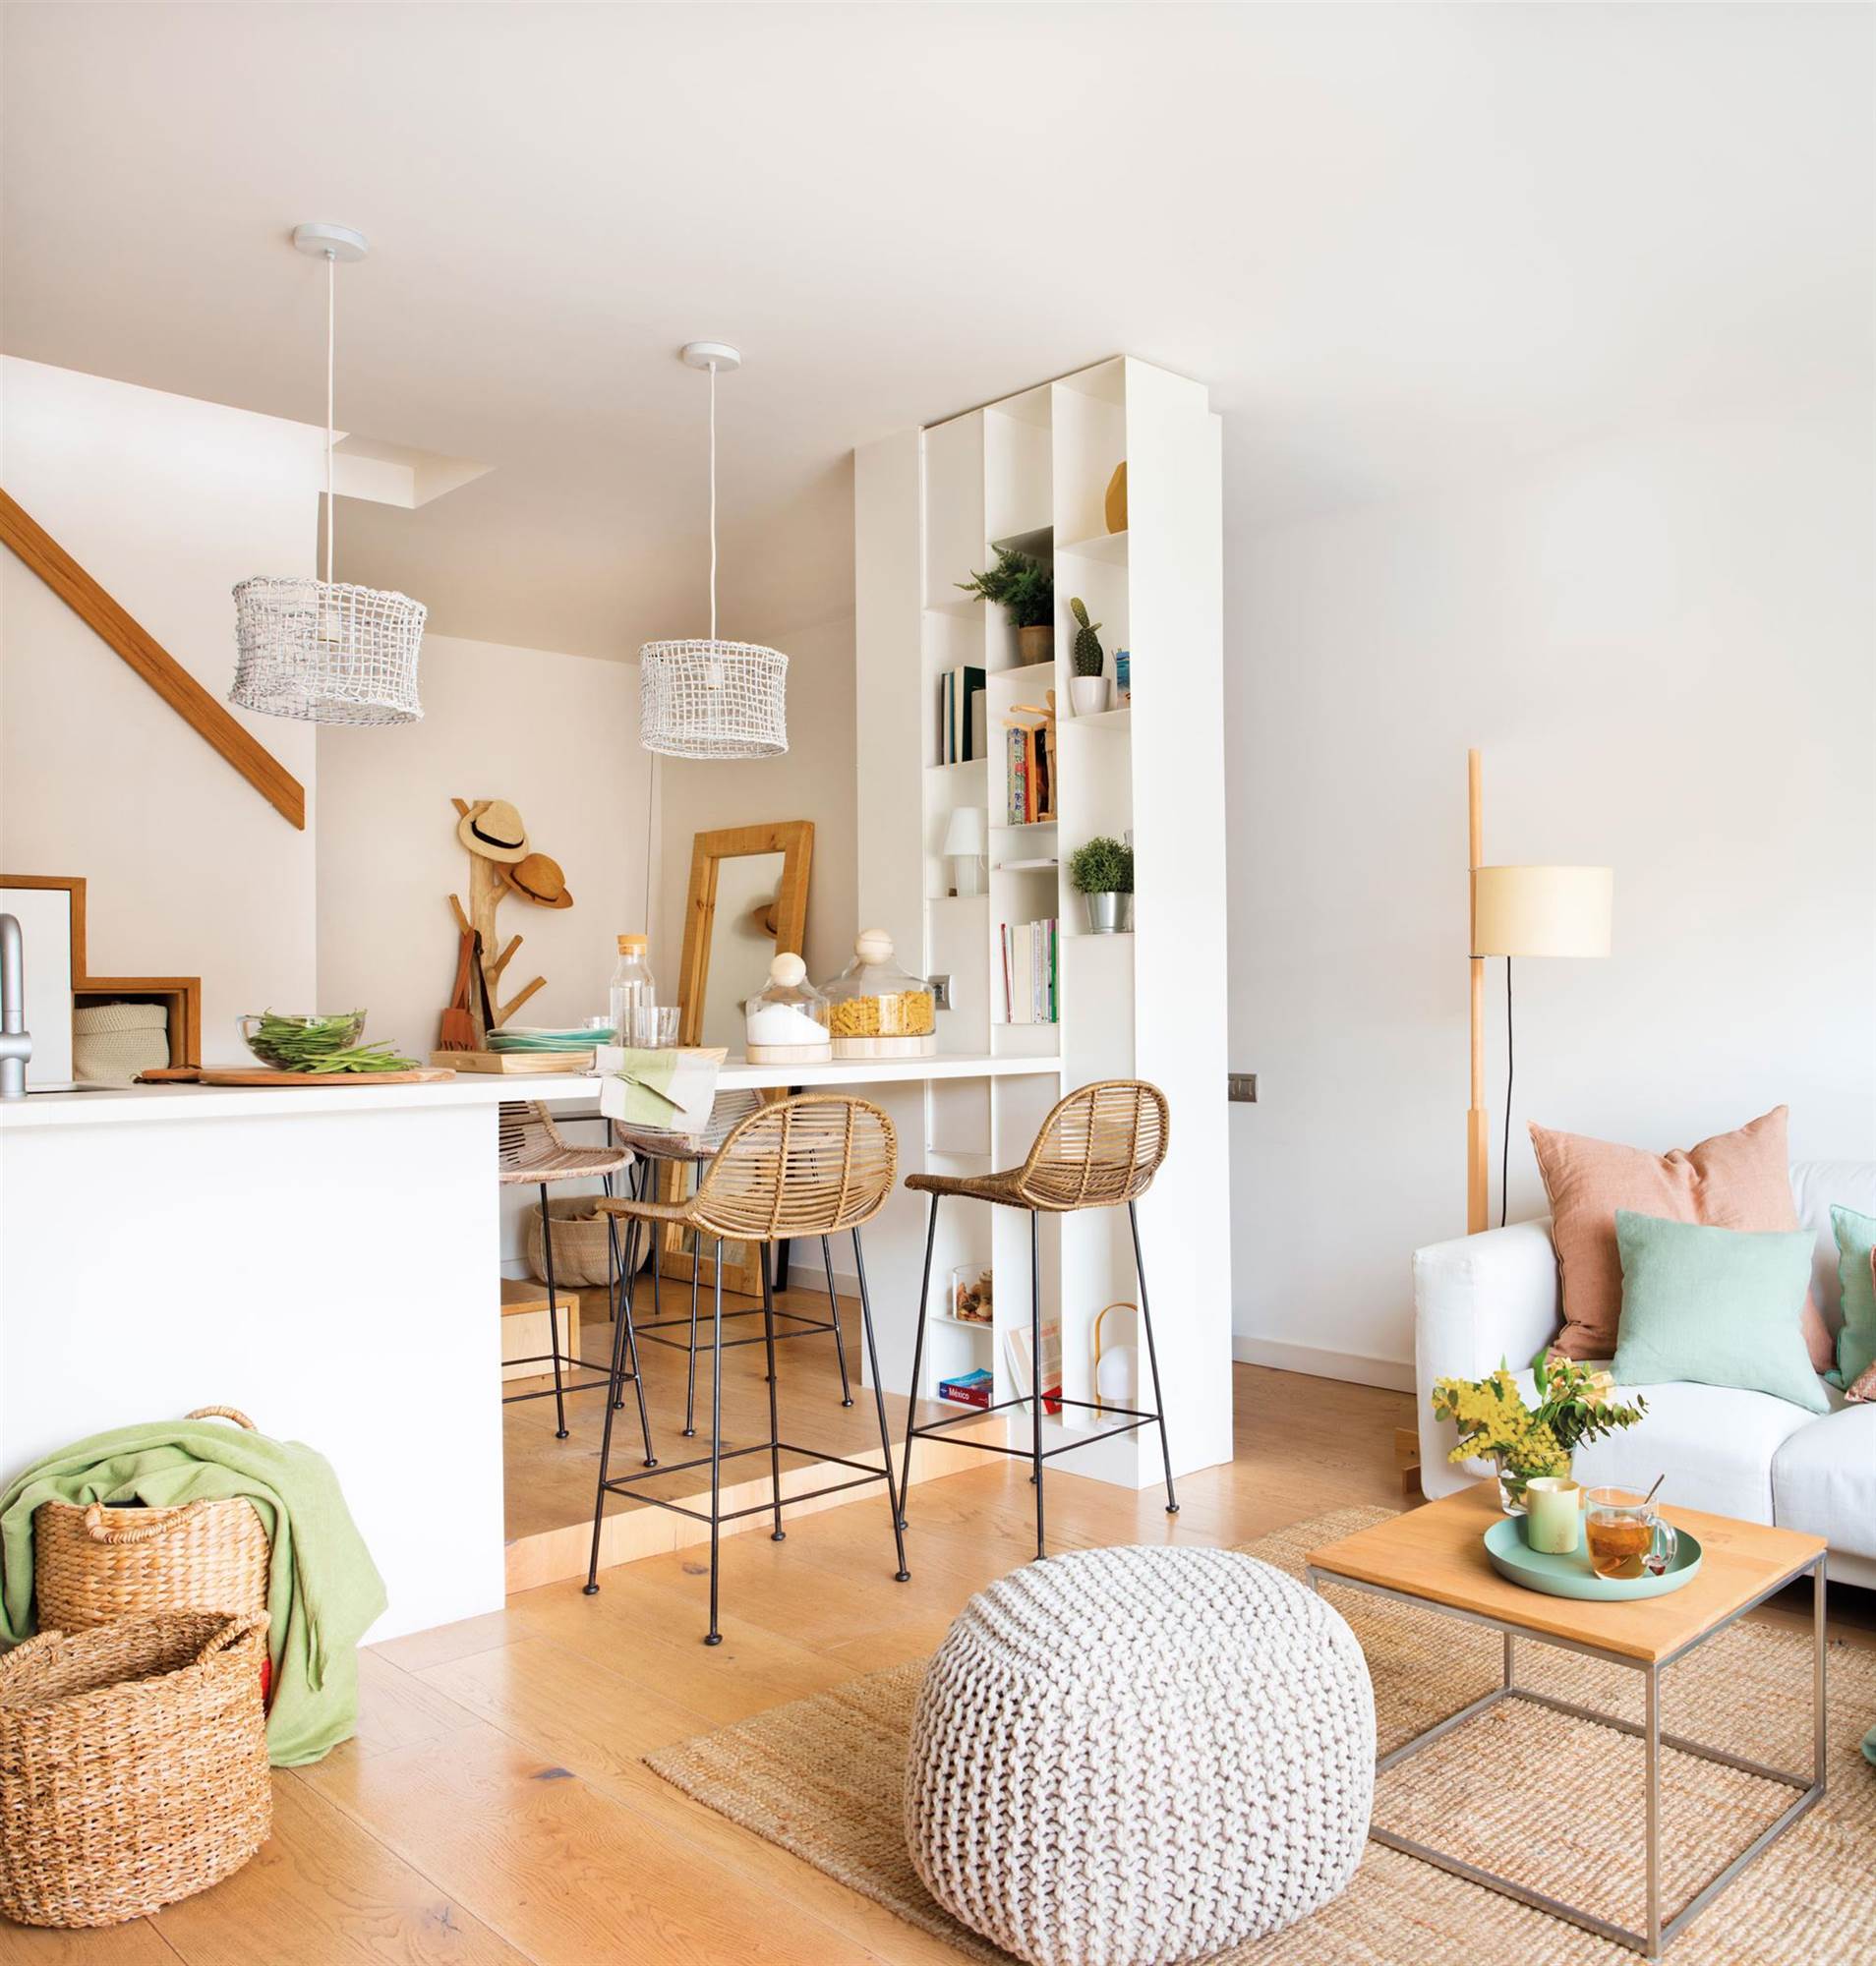 Salón abierto a la cocina con sofá neutro y detalles de fibras y madera